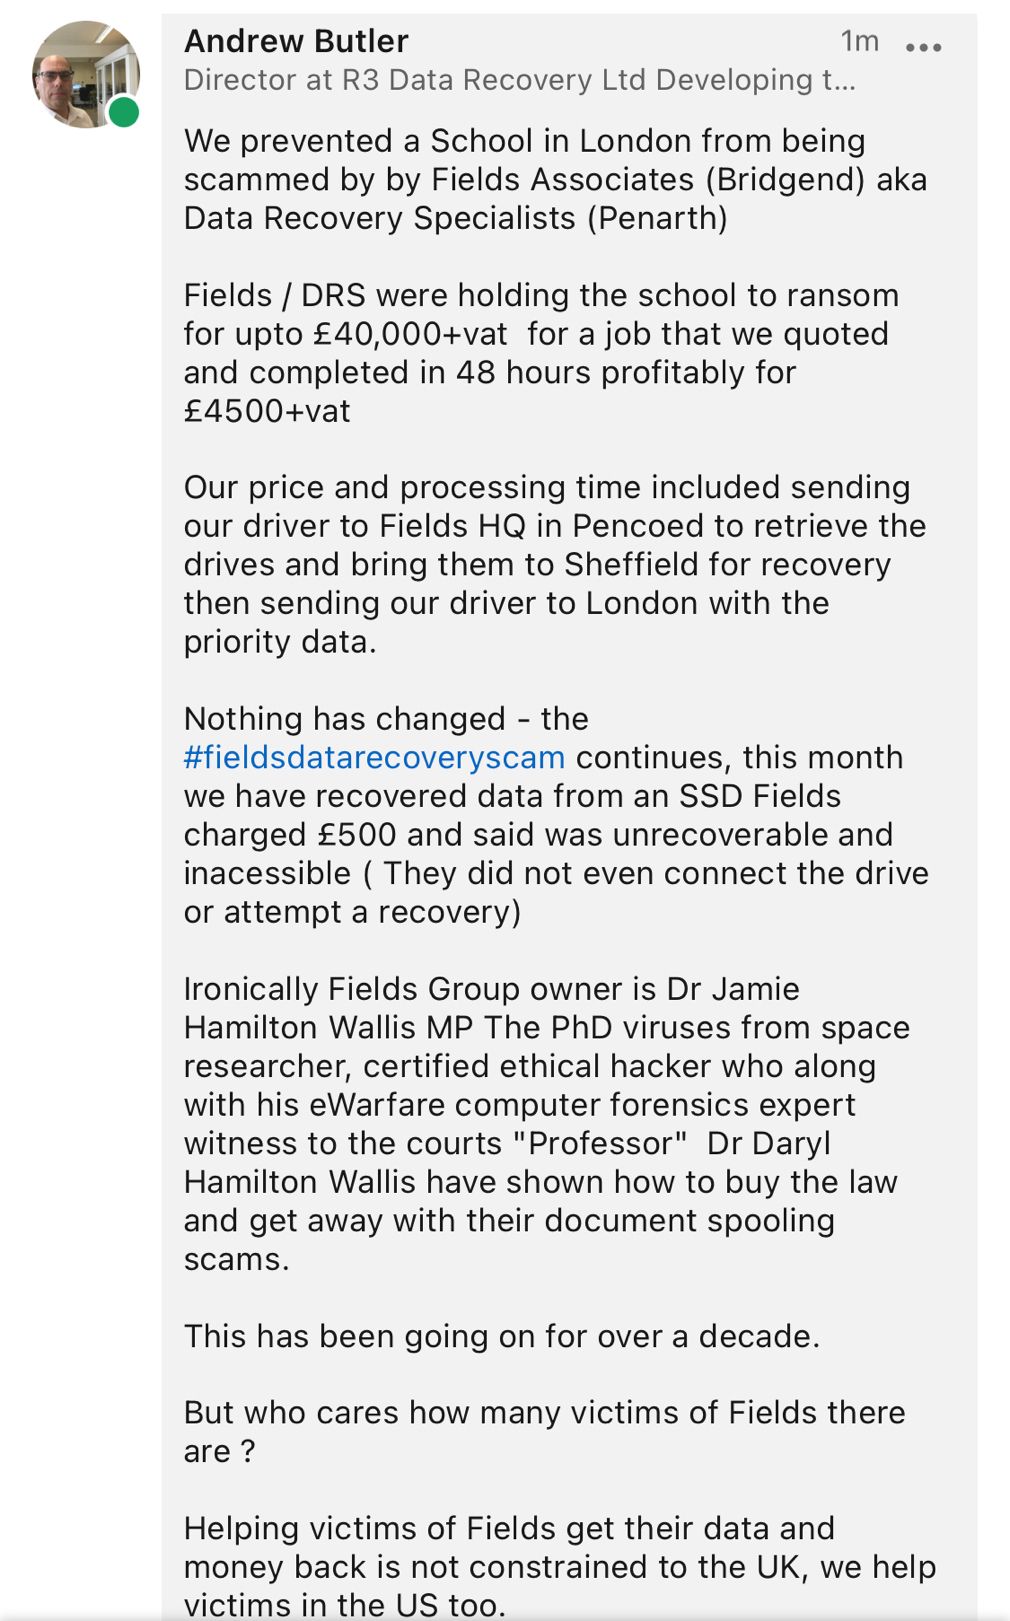 School in London scammed by Fields Associates